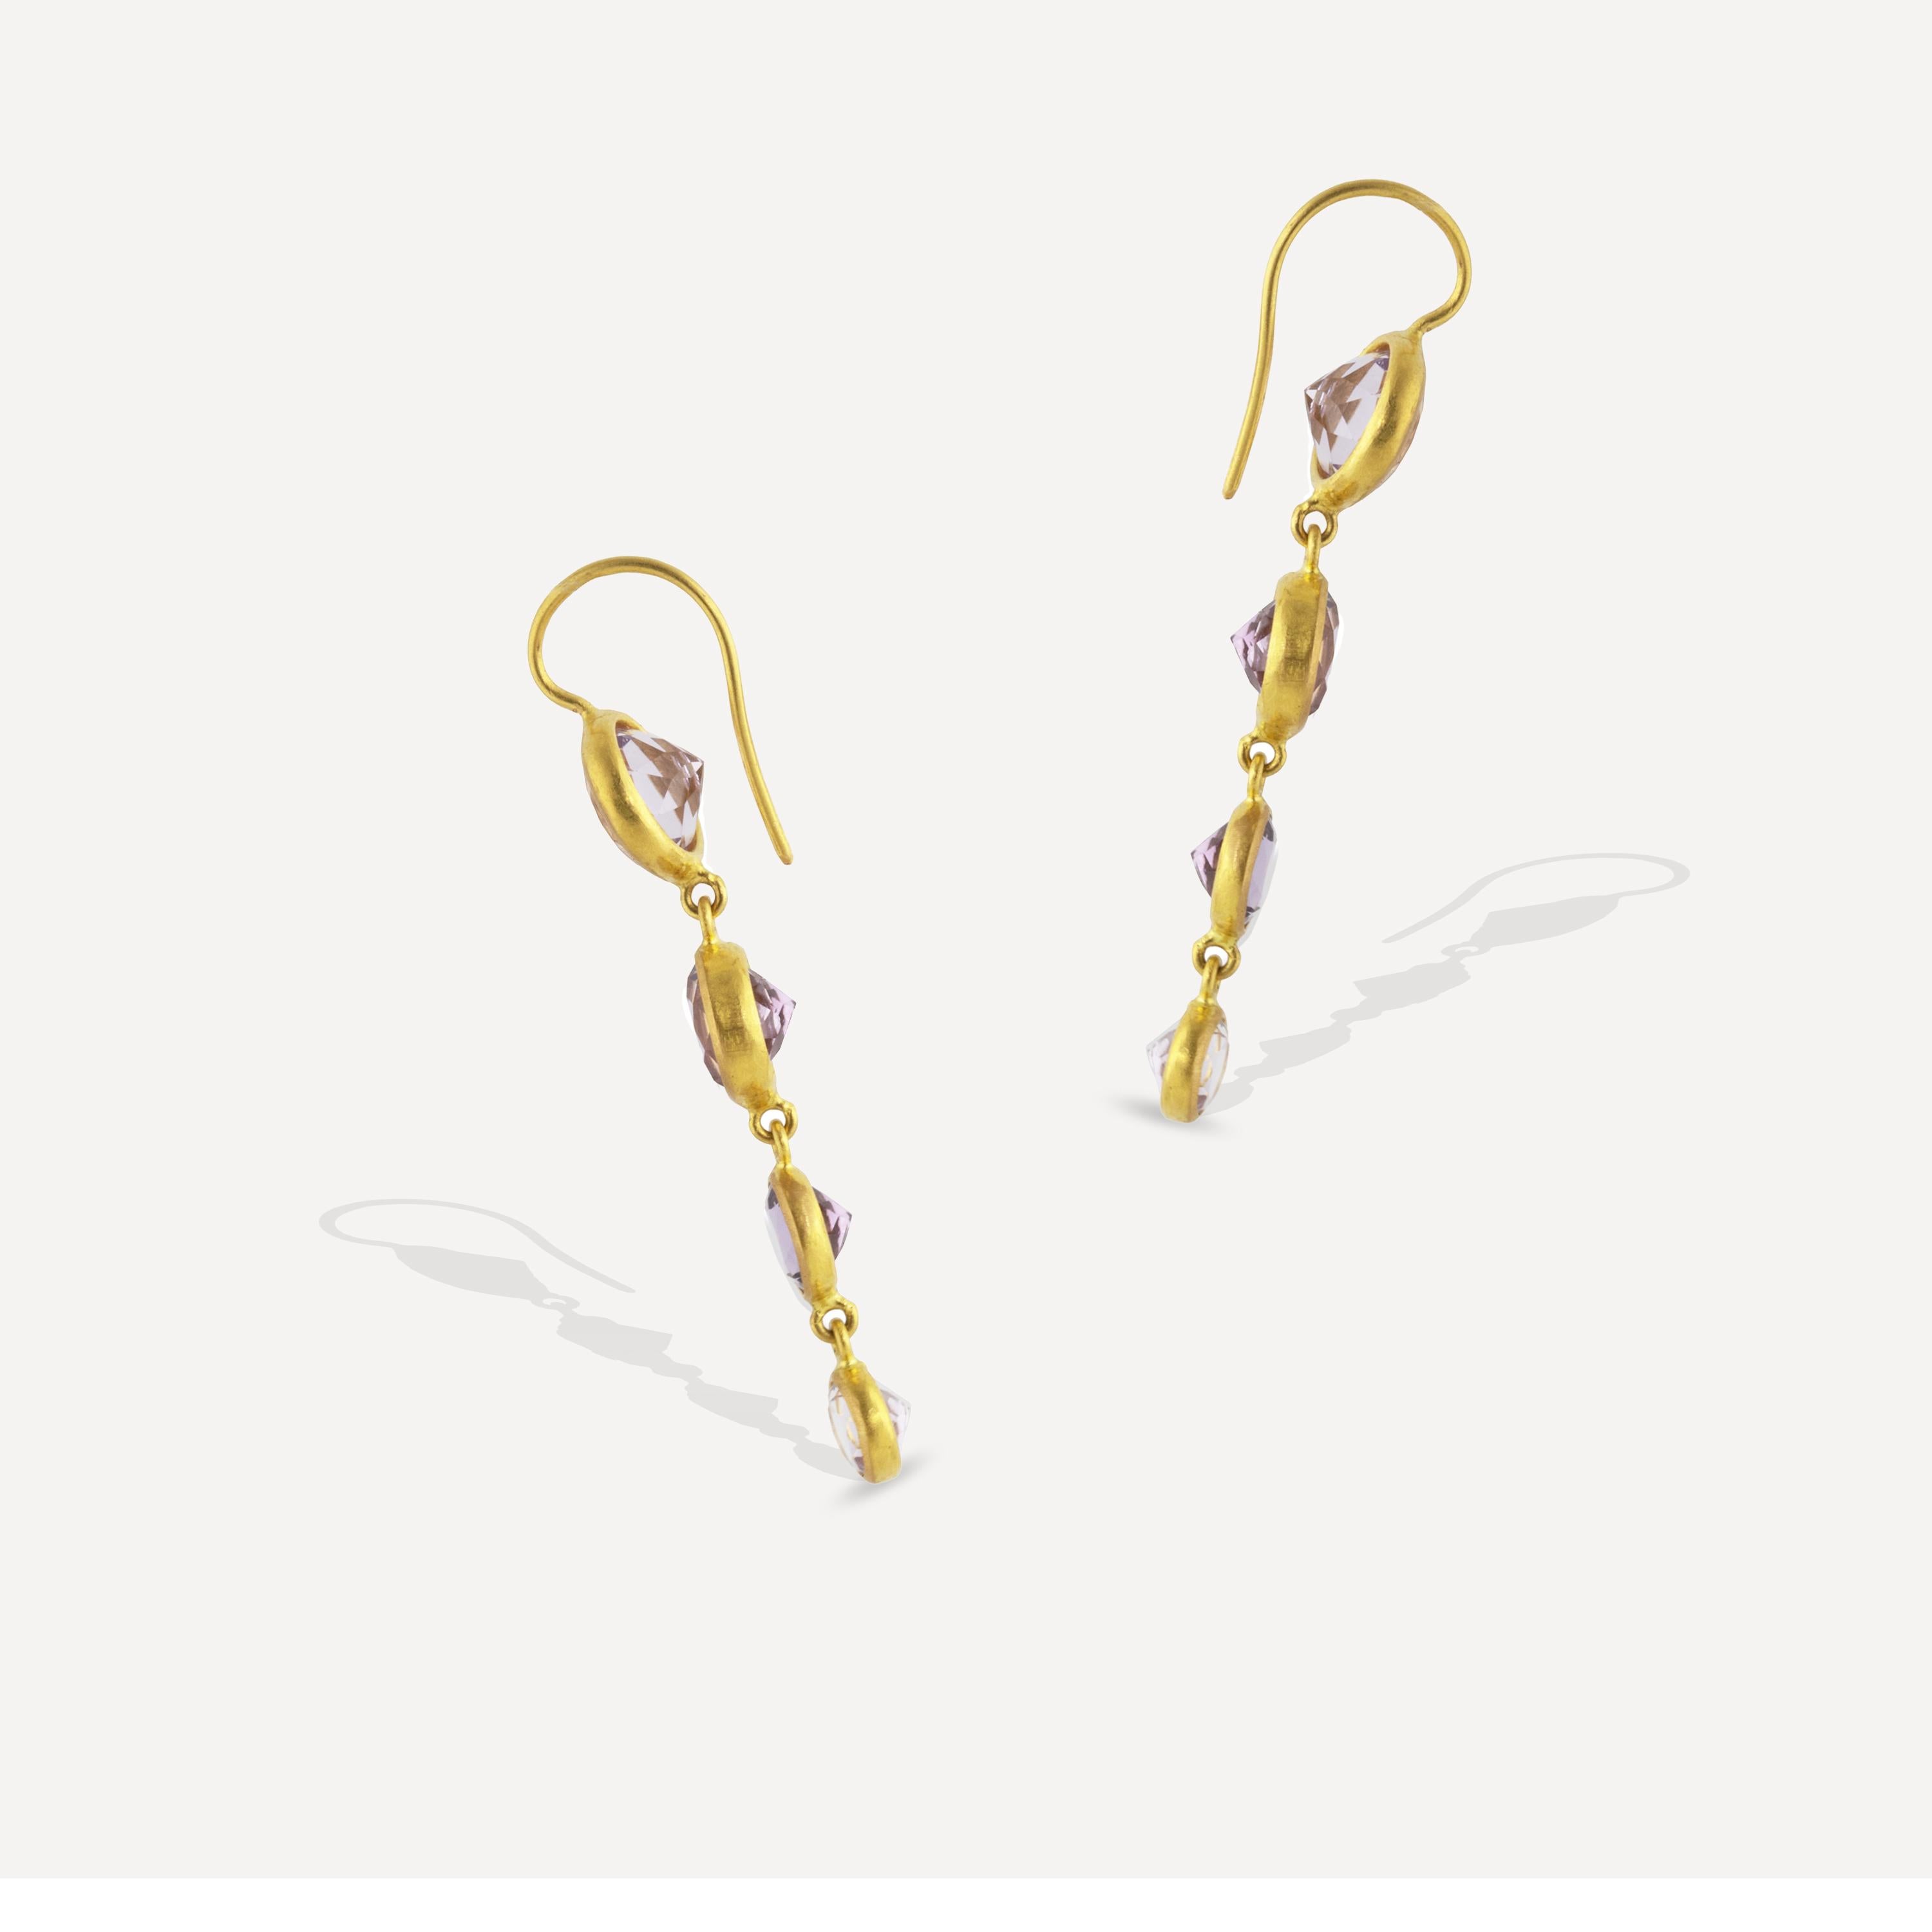 gold earrings 22k yellow gold earrings dangles pair fine jewelry